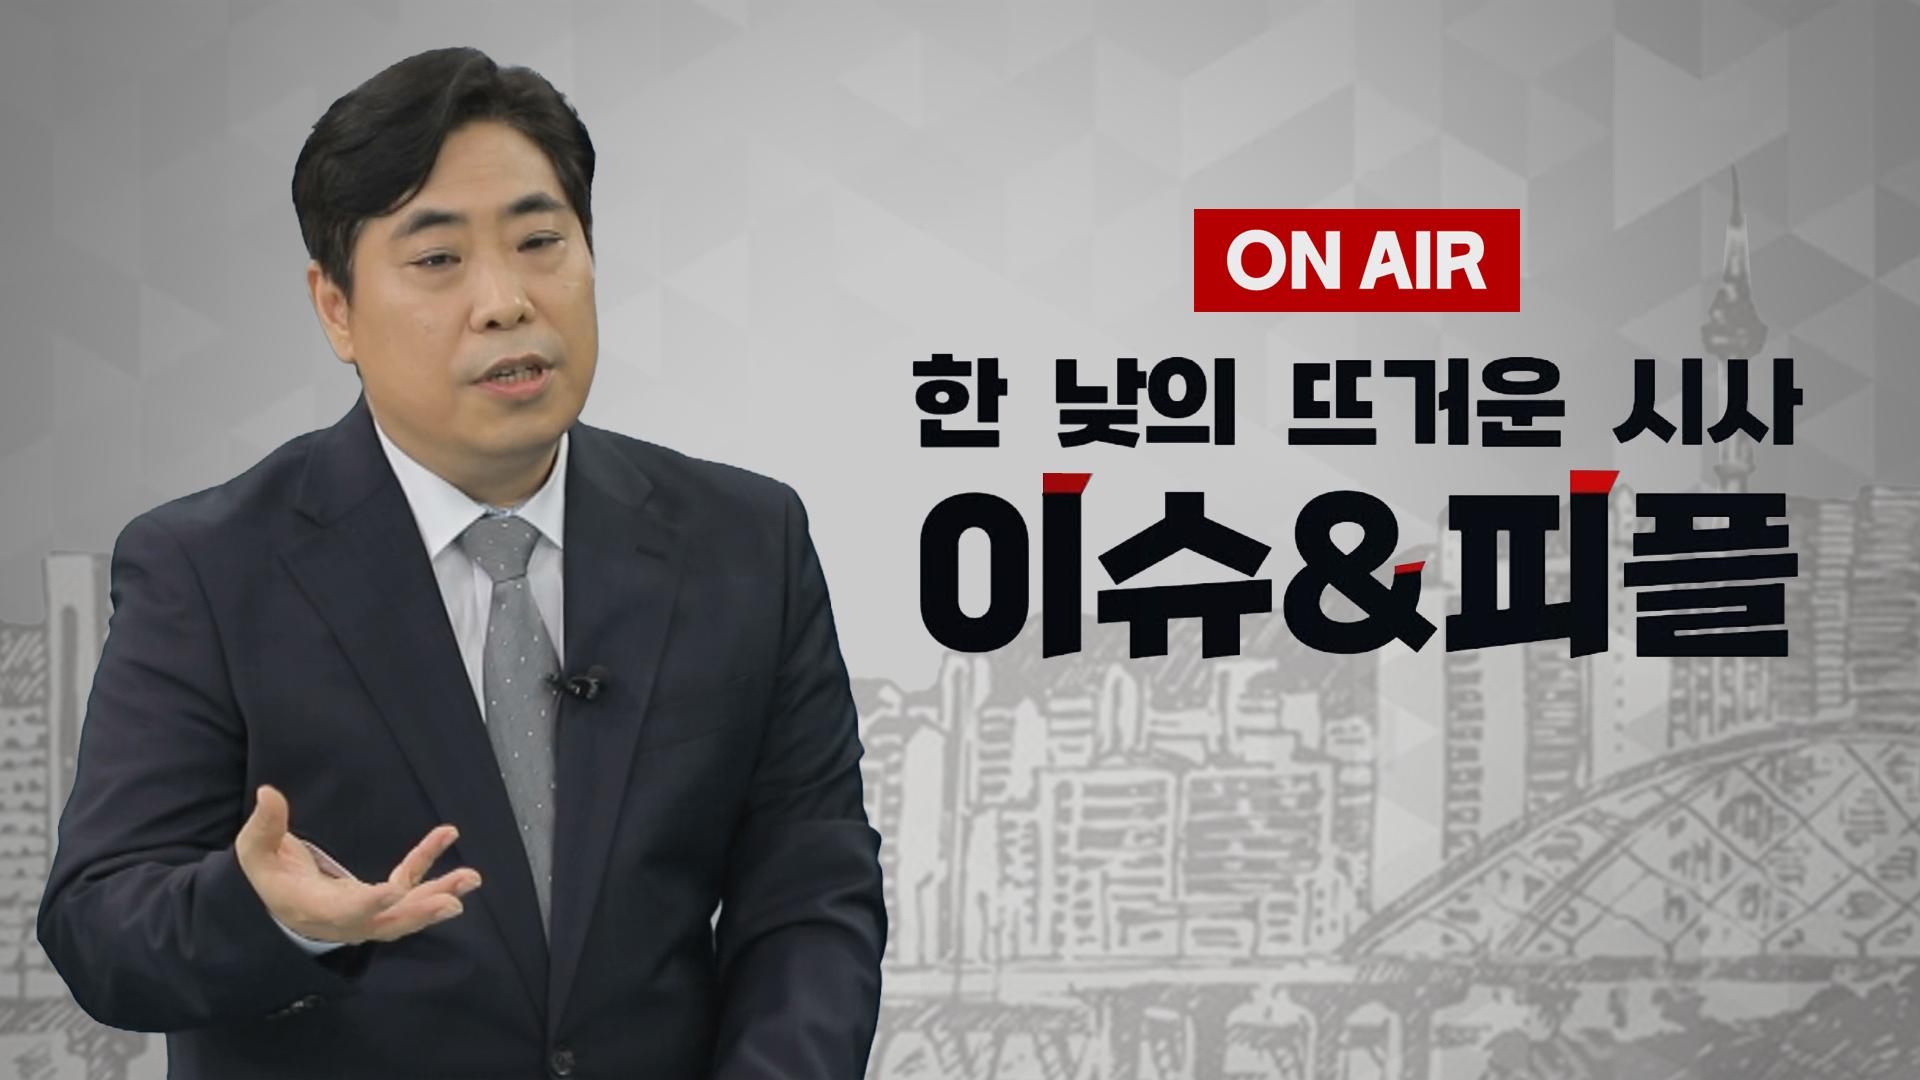 [이앤피] 박원석“장외투쟁 장기화는 민주당에 불리” 김병민“사법리스크 이슈 전환 의도”